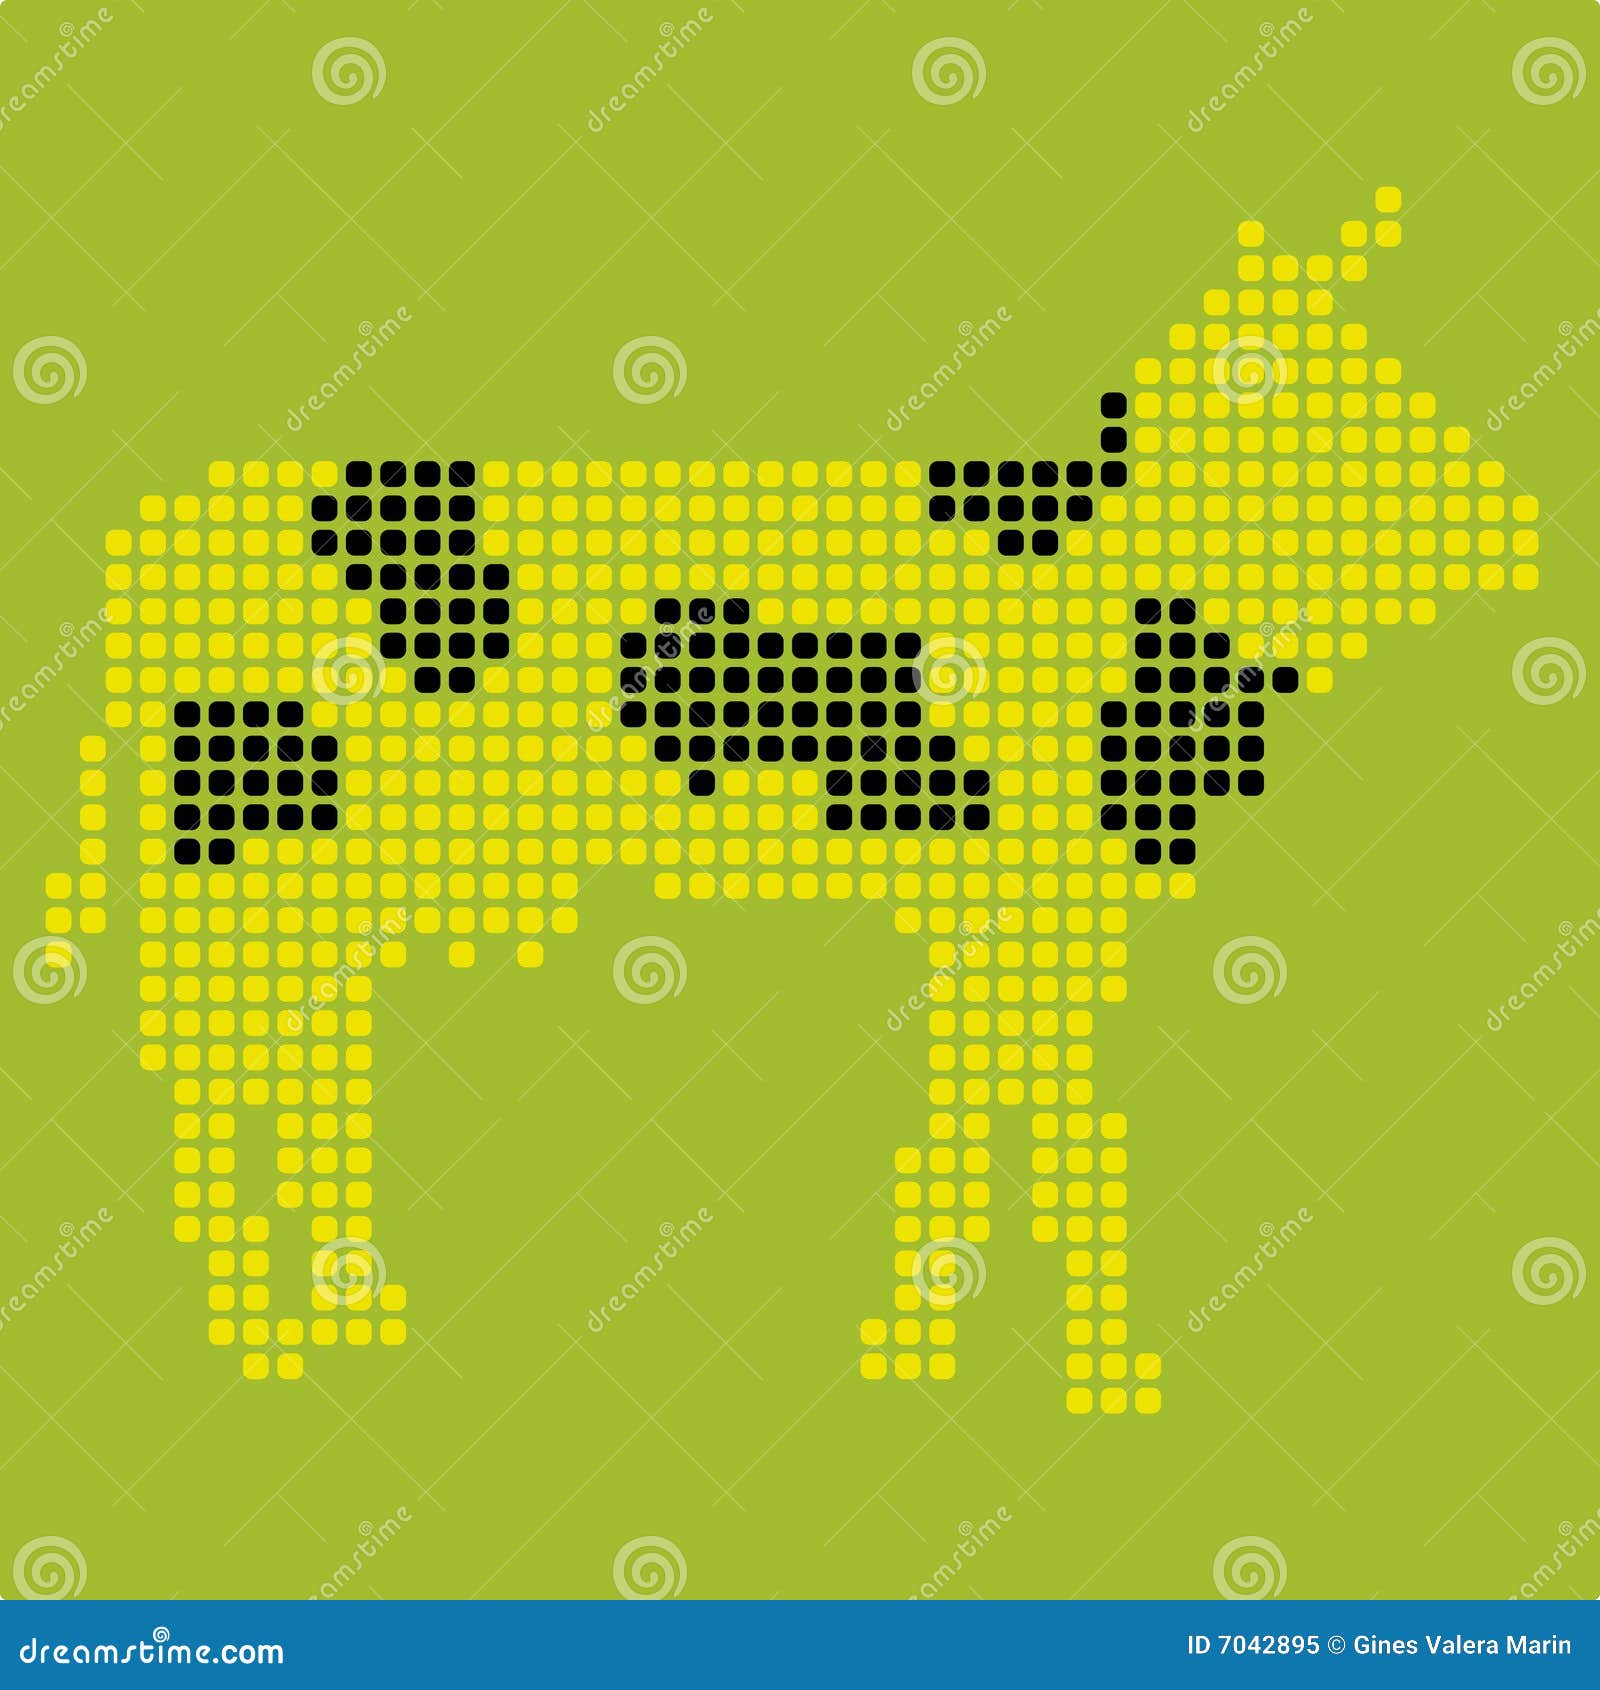 pixelated cow